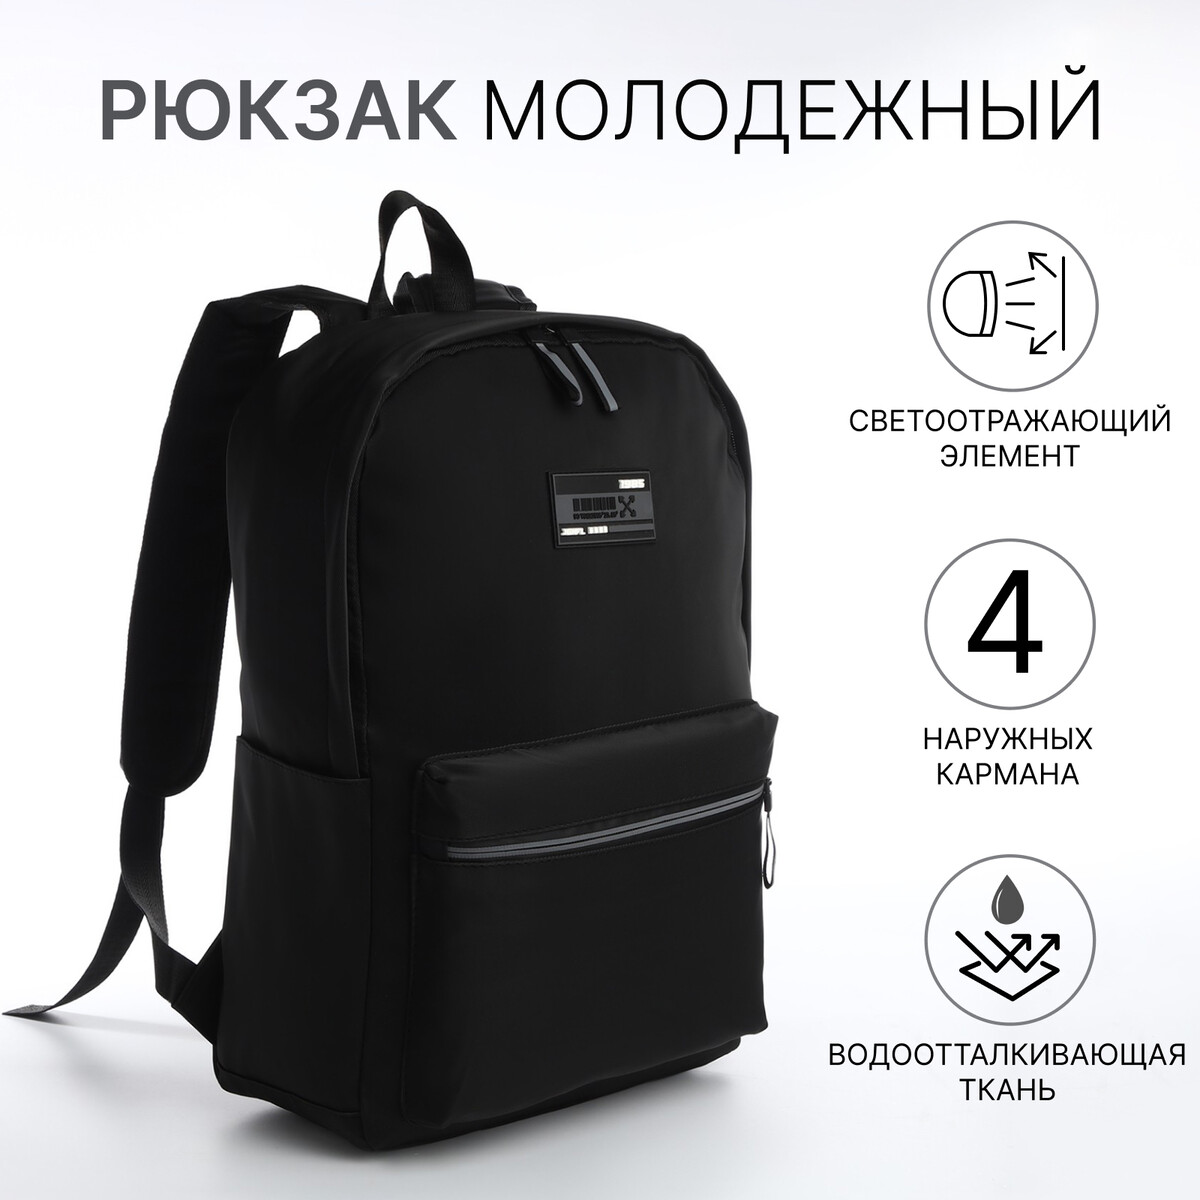 Рюкзак молодежный из текстиля на молнии, 4 кармана, цвет черный/серый рюкзак сумка на молнии 10188998 3 кармана отдел для ноутбука серый